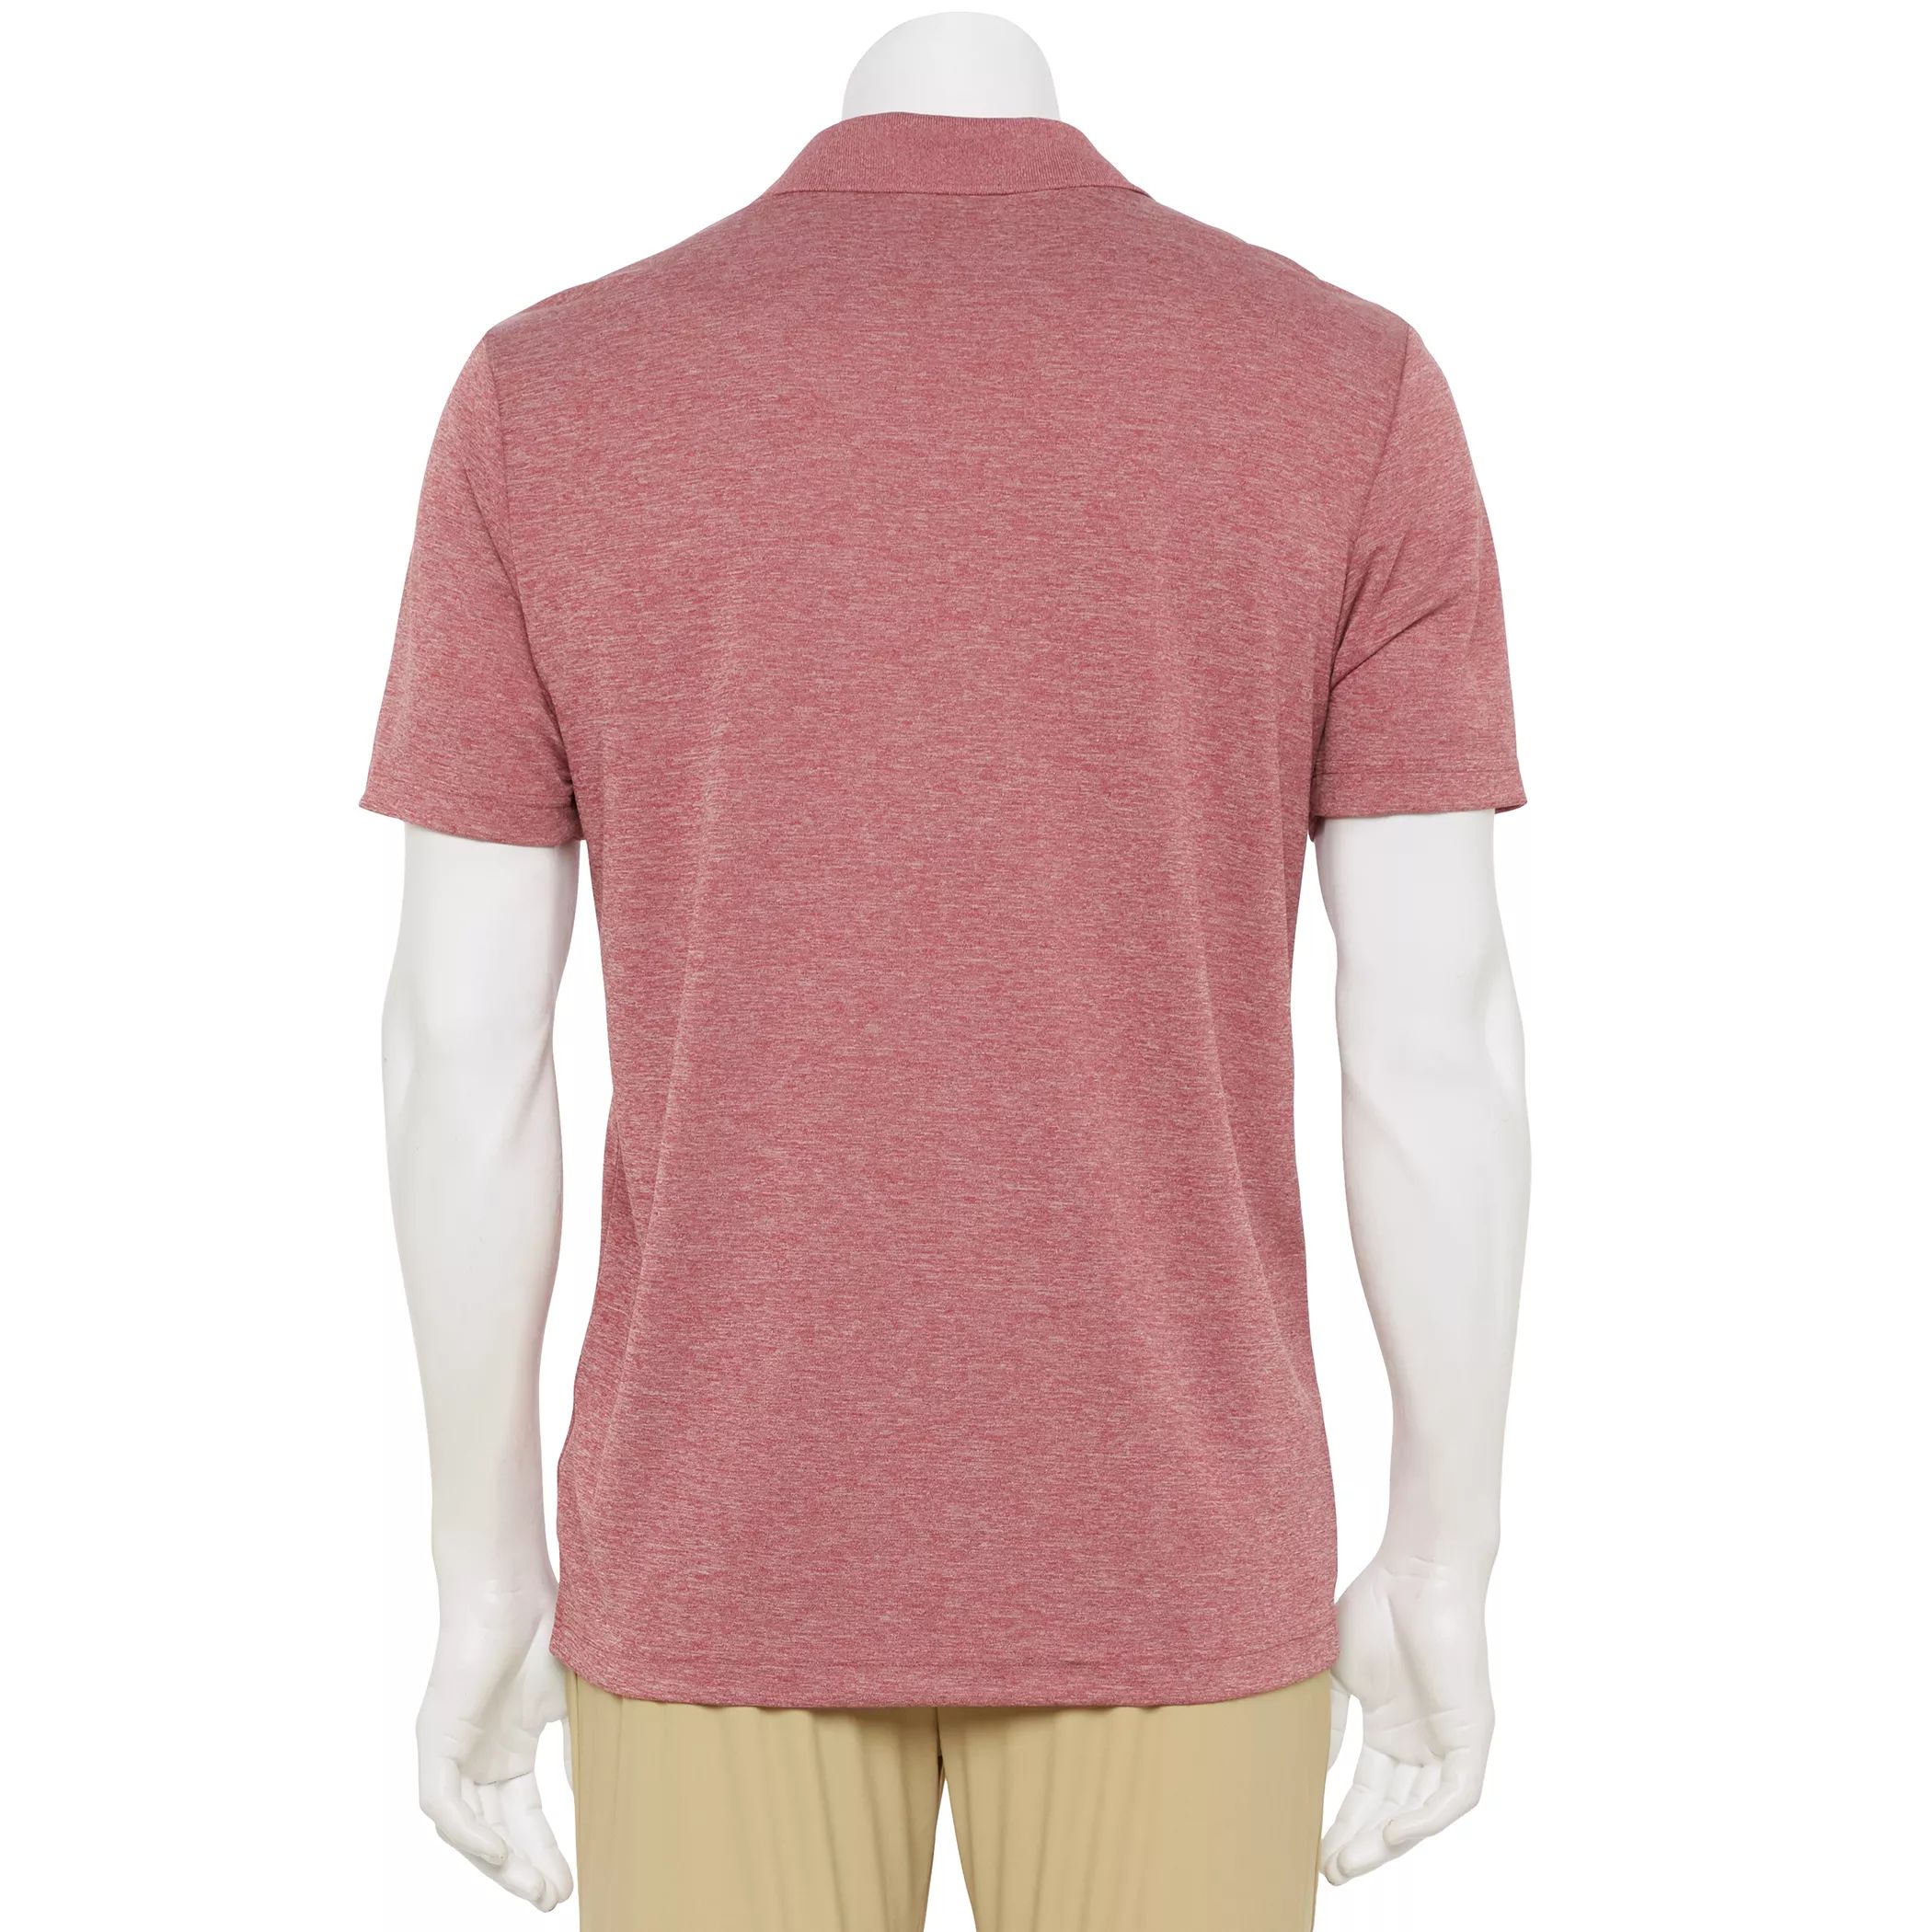 Мужская рубашка-поло для гольфа Primegreen Performance adidas